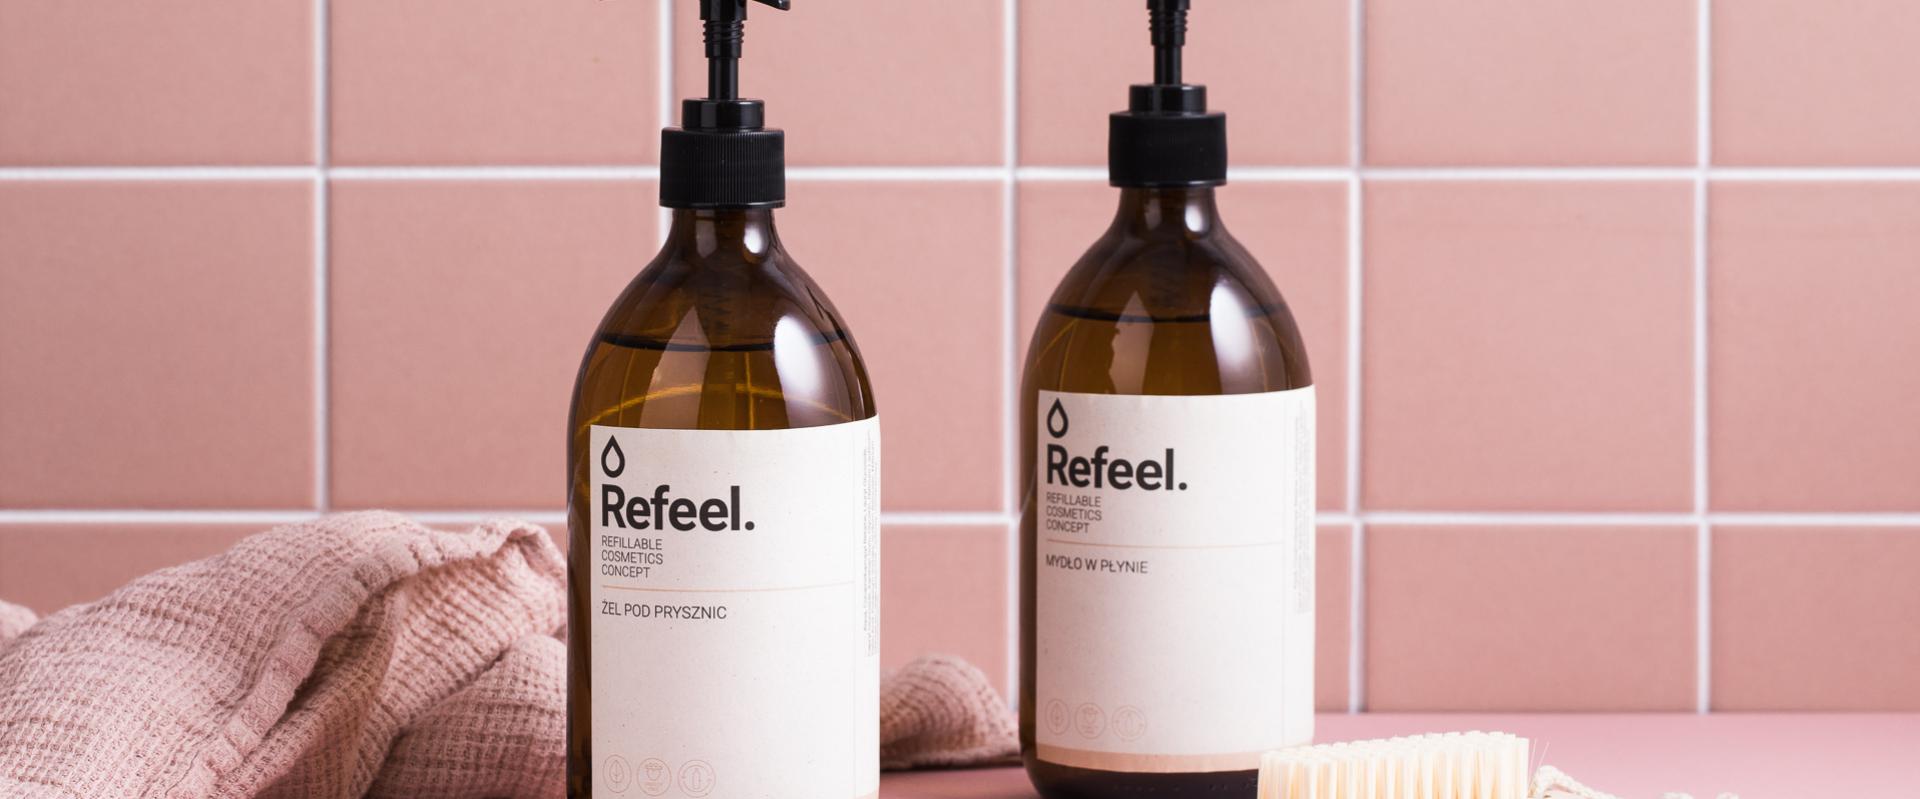 Refeel Concept - marka kosmetyków i chemii domowej, która stawia na opakowania wielorazowego użytku